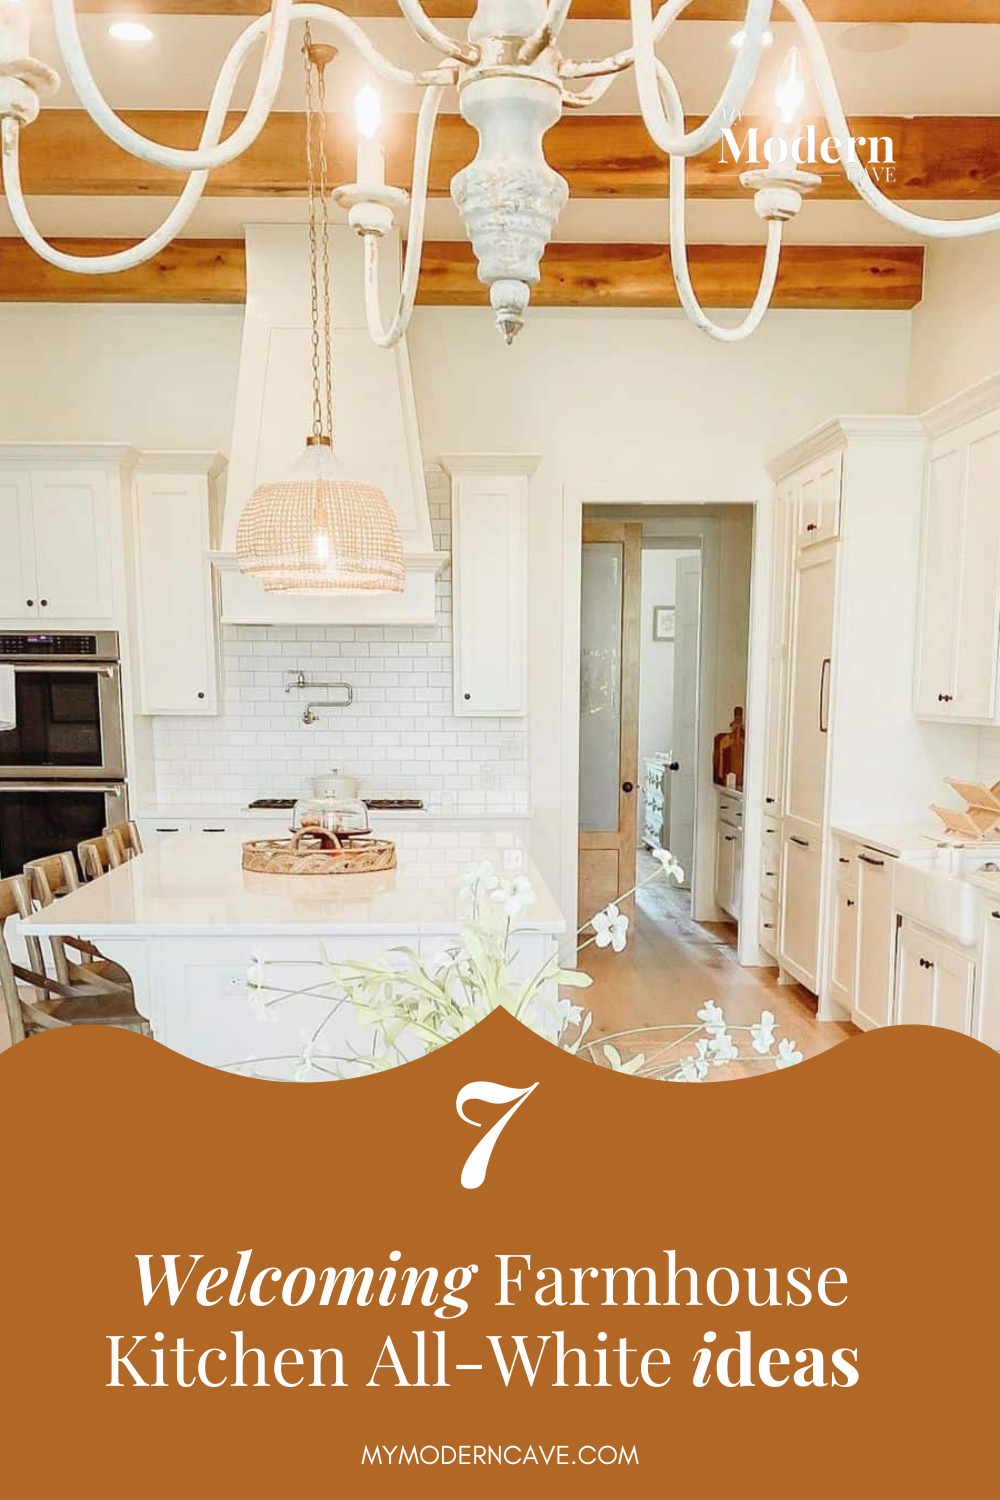 infographic on all white  kitchen ideas serene farmhouse space